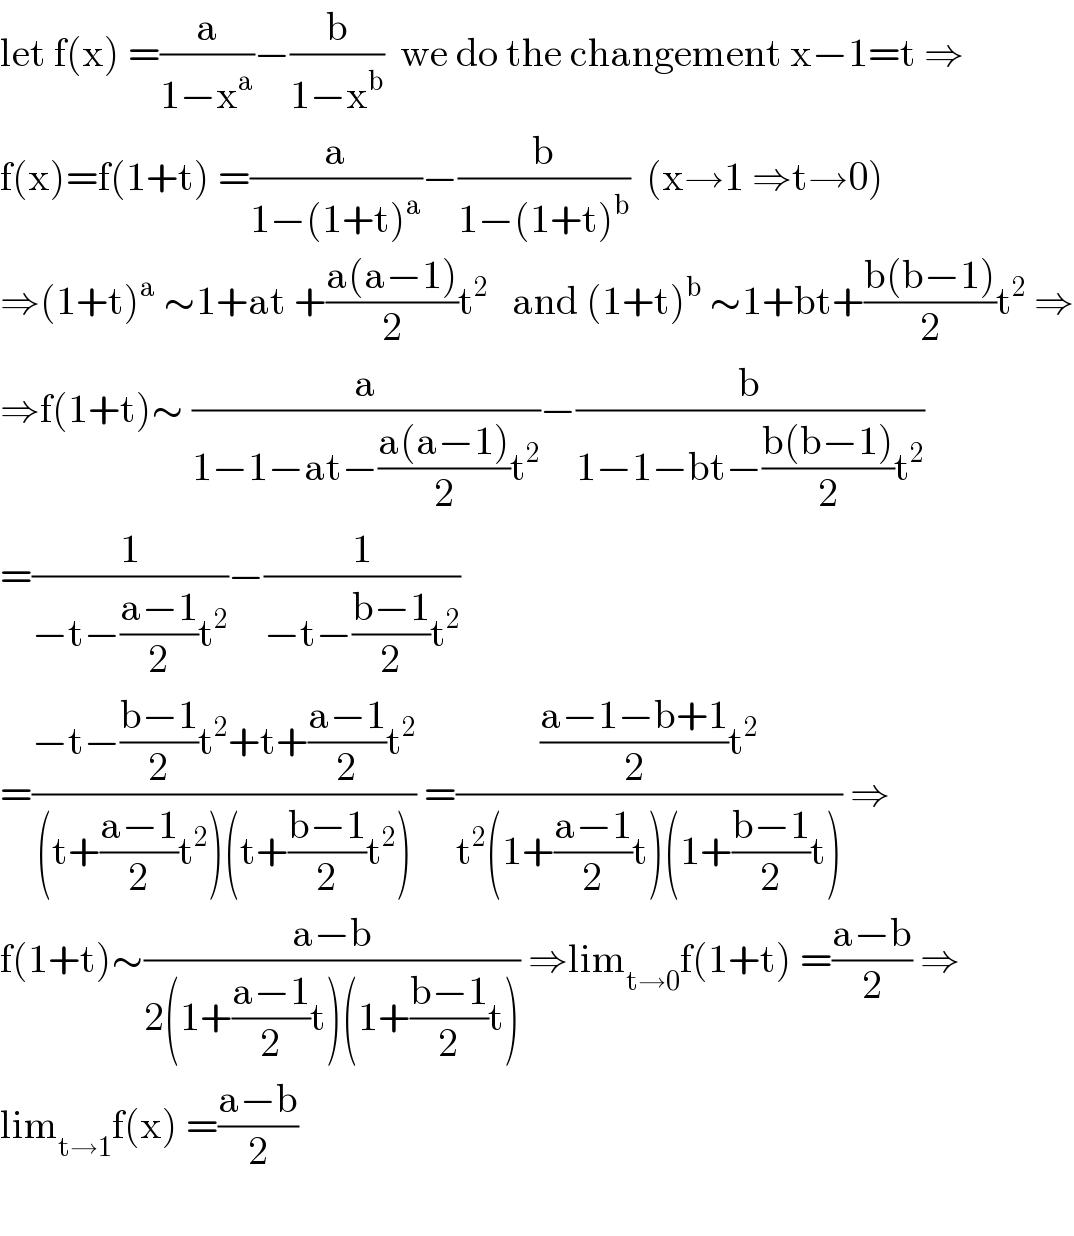 let f(x) =(a/(1−x^a ))−(b/(1−x^b ))  we do the changement x−1=t ⇒  f(x)=f(1+t) =(a/(1−(1+t)^a ))−(b/(1−(1+t)^b ))  (x→1 ⇒t→0)  ⇒(1+t)^a  ∼1+at +((a(a−1))/2)t^2    and (1+t)^b  ∼1+bt+((b(b−1))/2)t^2  ⇒  ⇒f(1+t)∼ (a/(1−1−at−((a(a−1))/2)t^2 ))−(b/(1−1−bt−((b(b−1))/2)t^2 ))  =(1/(−t−((a−1)/2)t^2 ))−(1/(−t−((b−1)/2)t^2 ))  =((−t−((b−1)/2)t^2 +t+((a−1)/2)t^2 )/((t+((a−1)/2)t^2 )(t+((b−1)/2)t^2 ))) =((((a−1−b+1)/2)t^2 )/(t^2 (1+((a−1)/2)t)(1+((b−1)/2)t))) ⇒  f(1+t)∼((a−b)/(2(1+((a−1)/2)t)(1+((b−1)/2)t))) ⇒lim_(t→0) f(1+t) =((a−b)/2) ⇒  lim_(t→1) f(x) =((a−b)/2)    